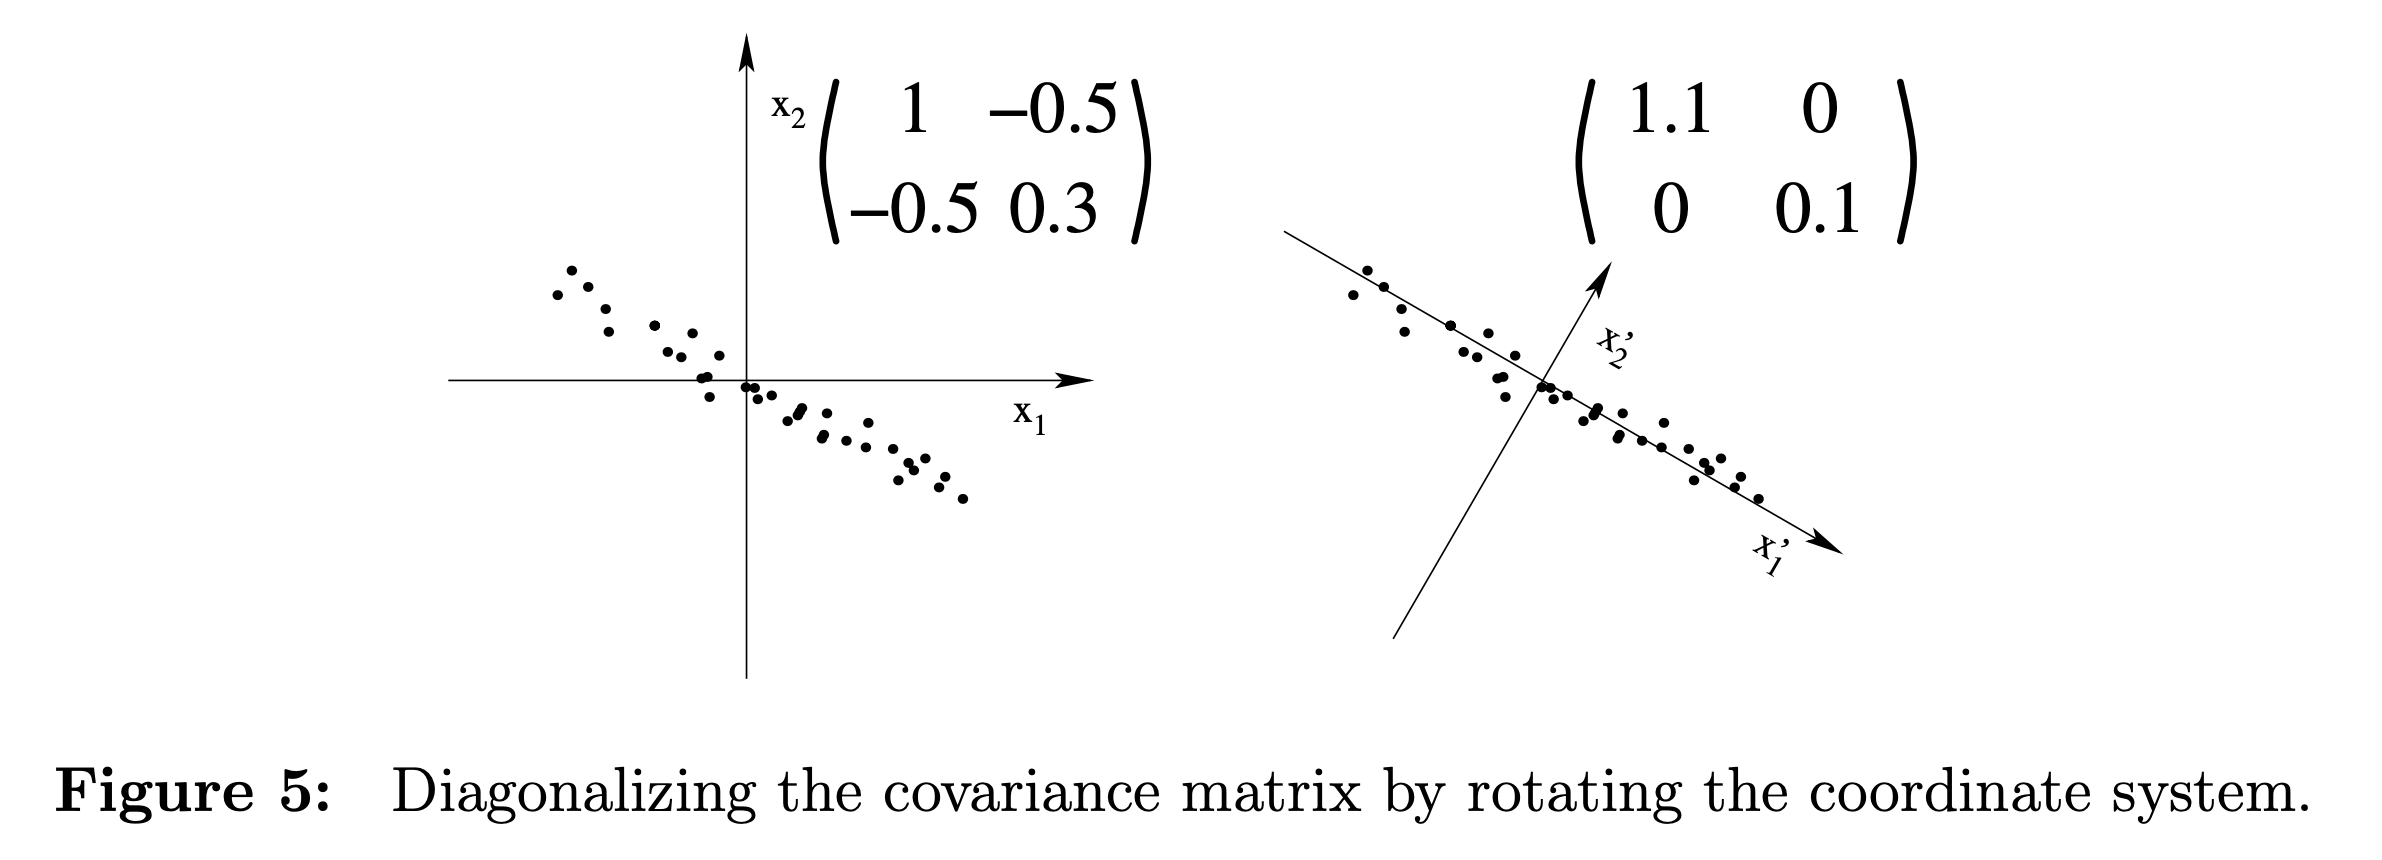 diagonalizing_covariance_example